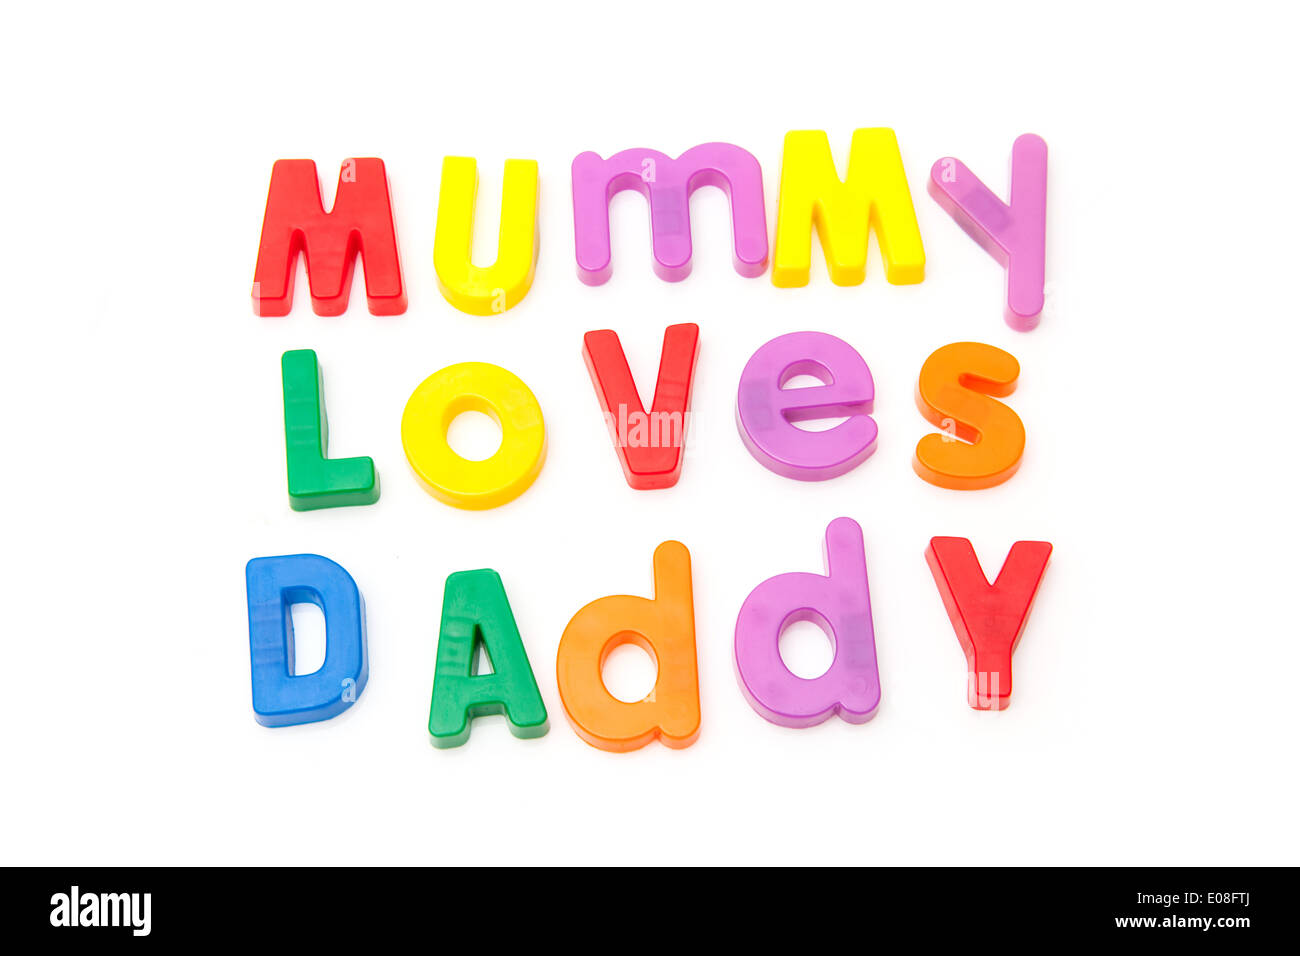 Mama liebt Daddy in magnetische Buchstaben geschrieben. Stockfoto